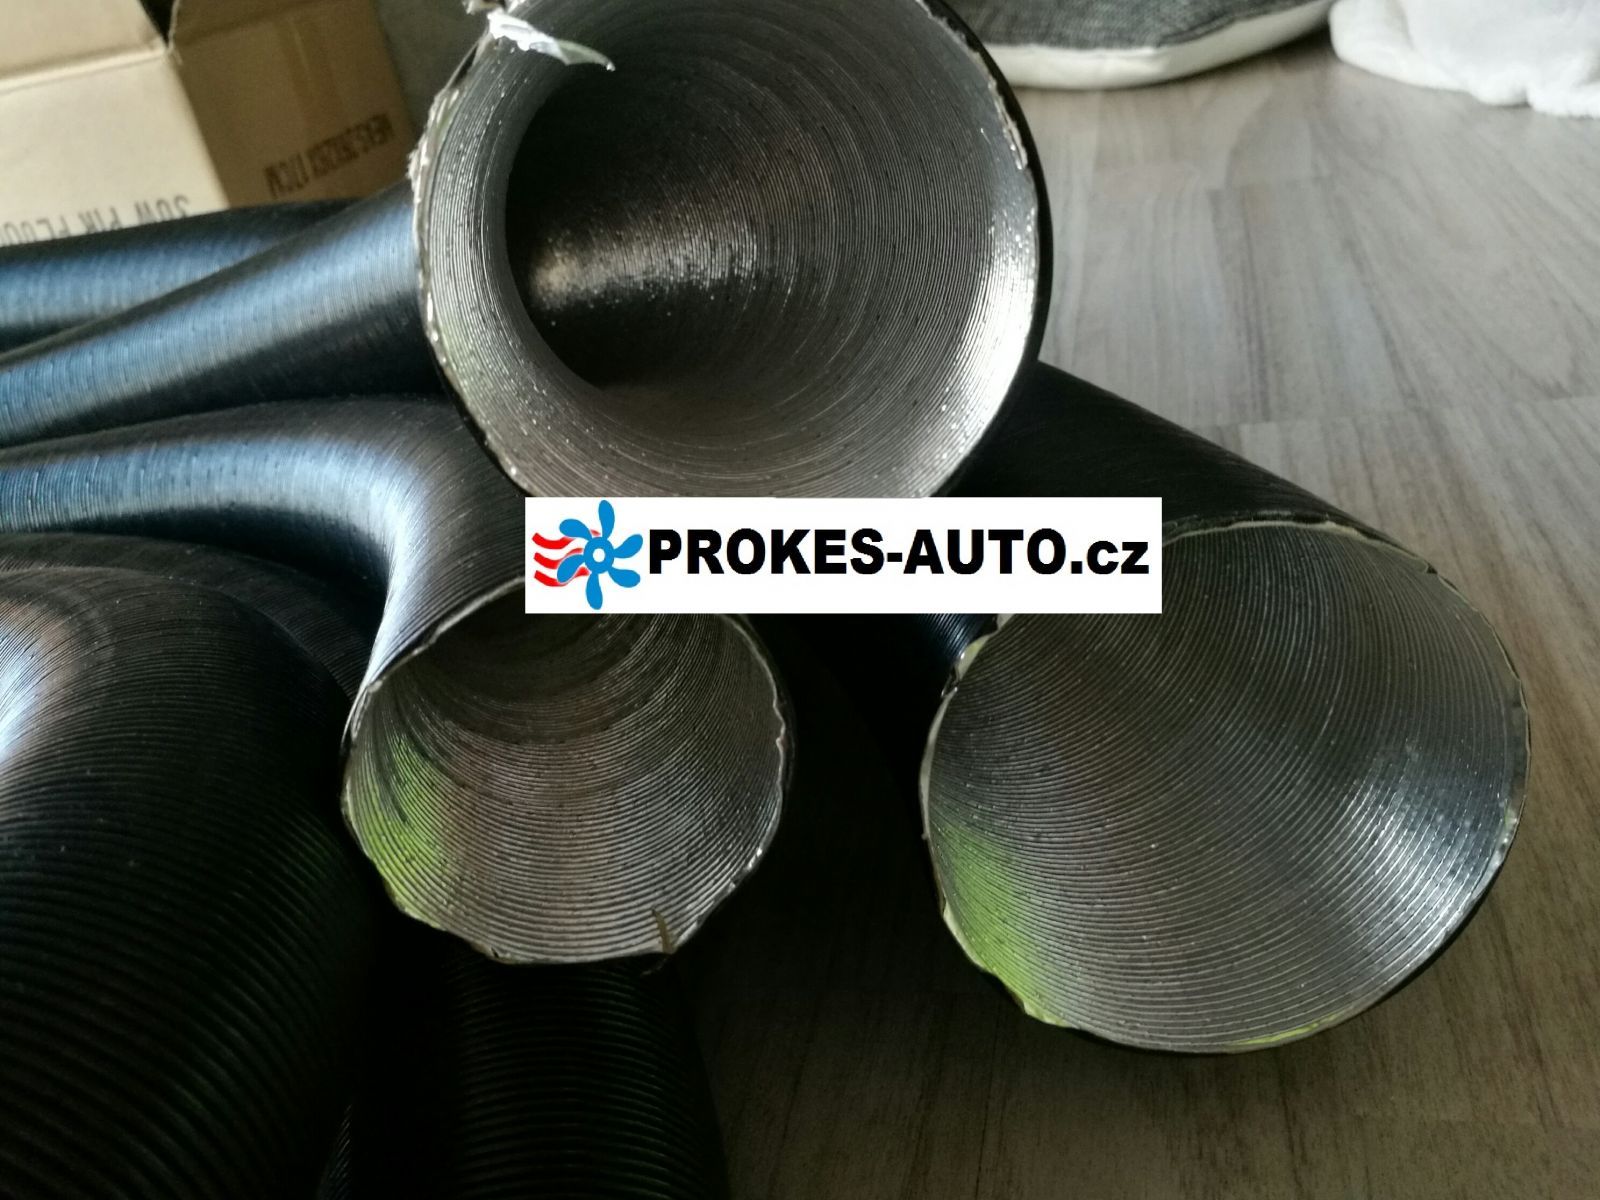 Flexiblen Schlauch Heißluft D 90mm 60cm / APK aluminium, paper, plastic / 90395A / 102114370000 / APK90